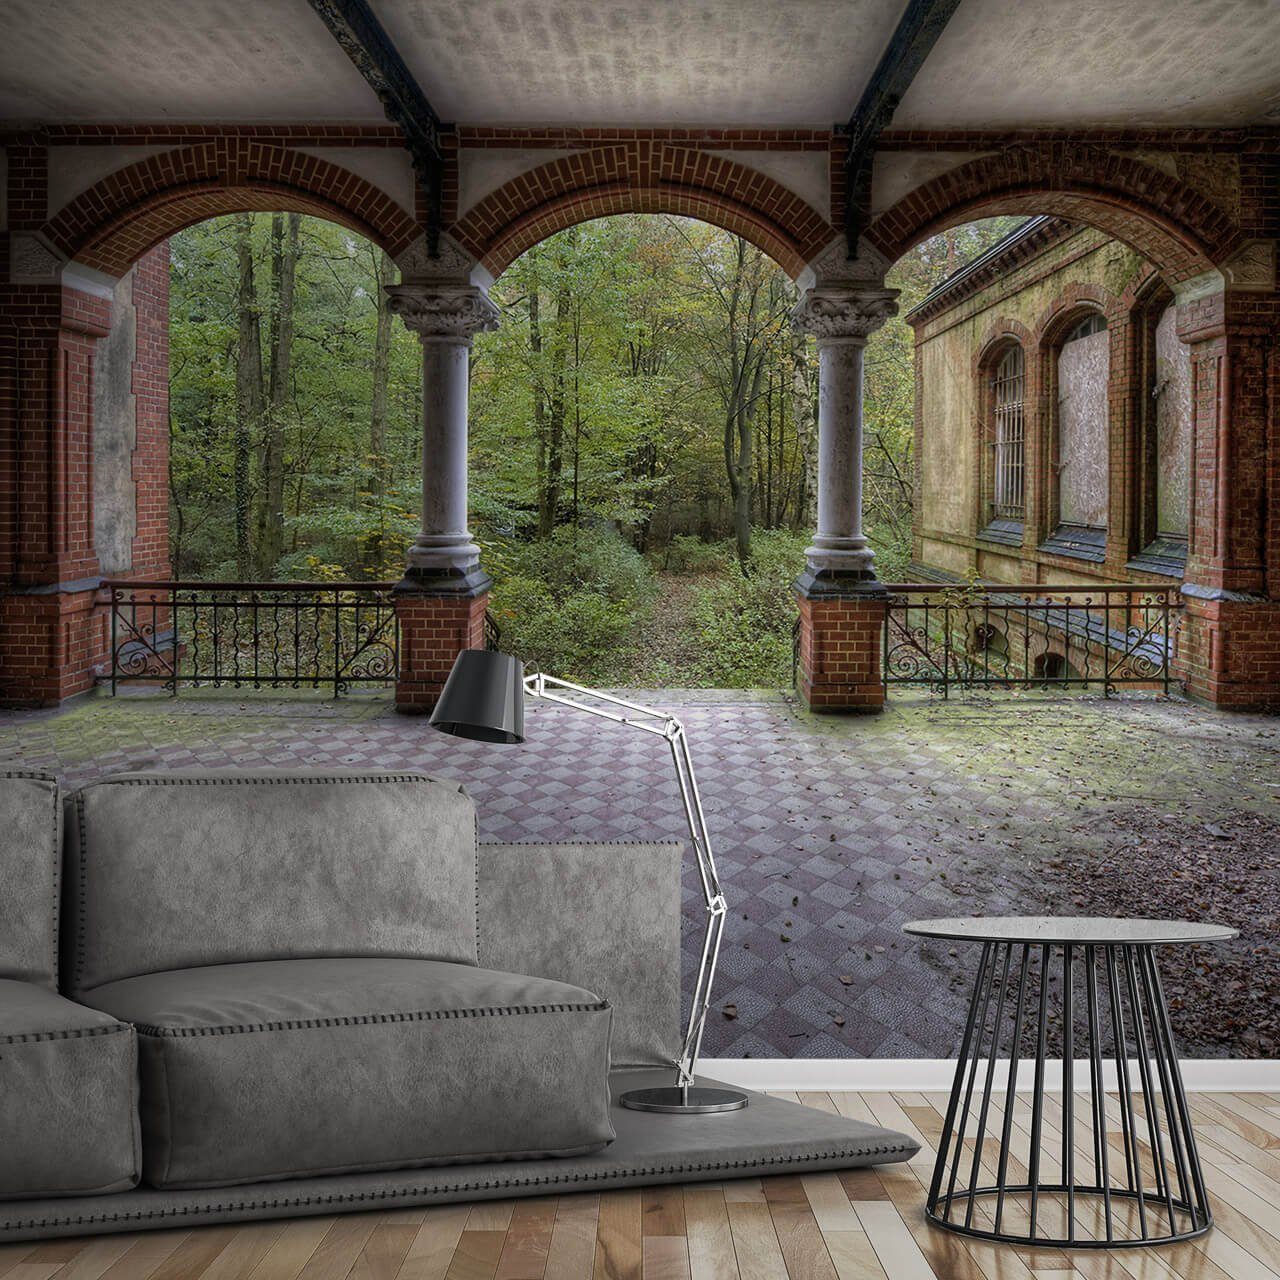 Vliestapete leicht glänzend, Tapete Design Villa lichtbeständige Terrace, KUNSTLOFT Vintage